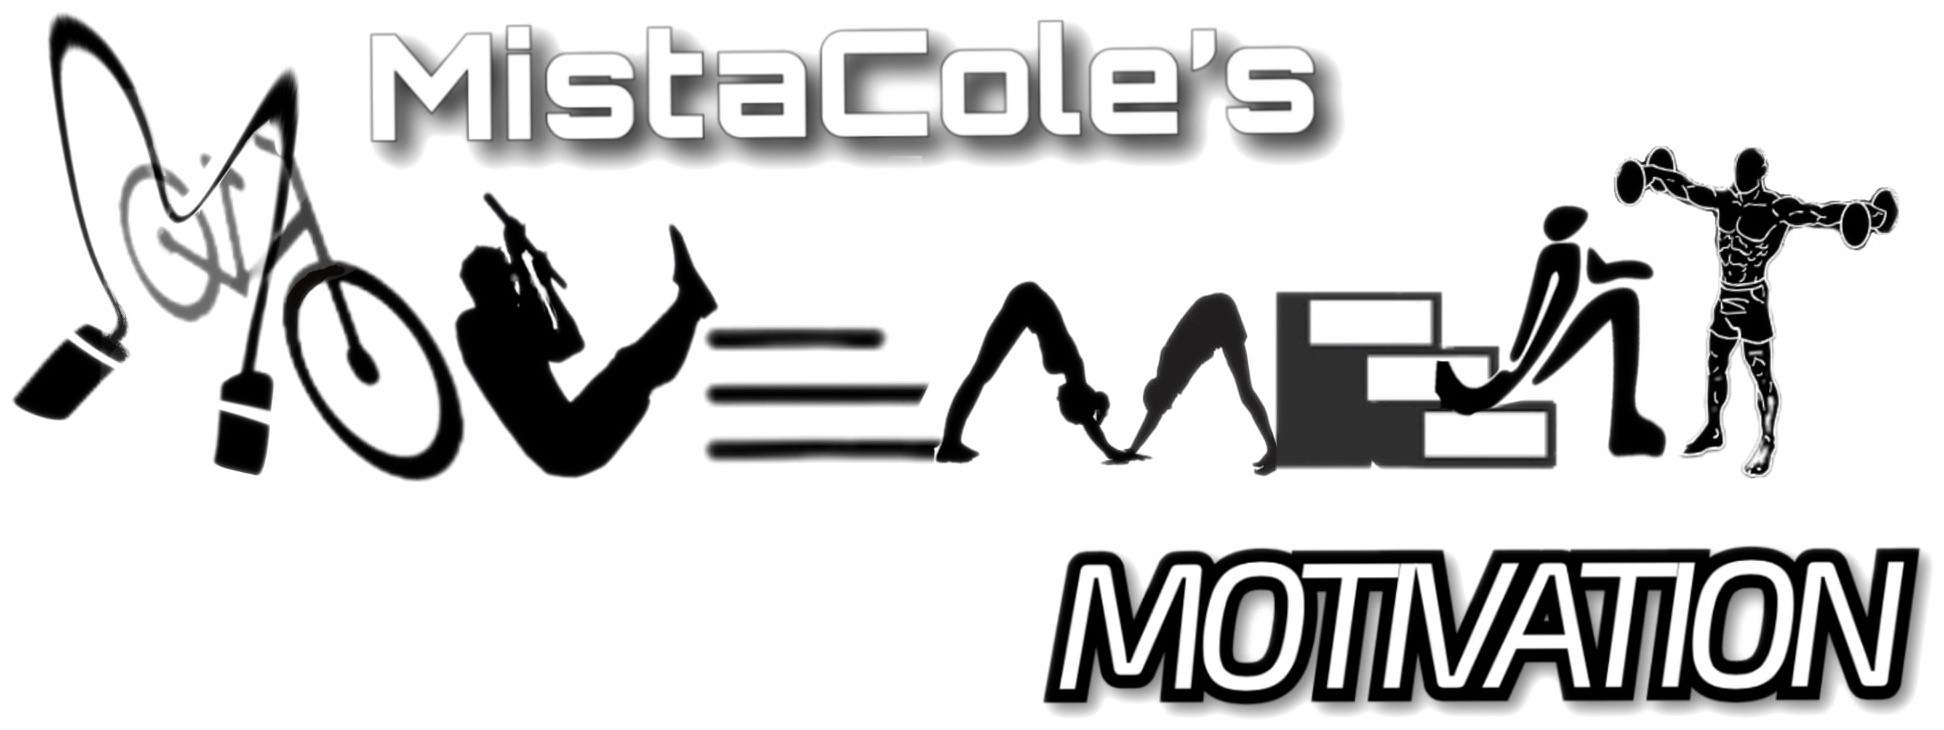  MISTACOLE'S MOVEMENT MOTIVATION